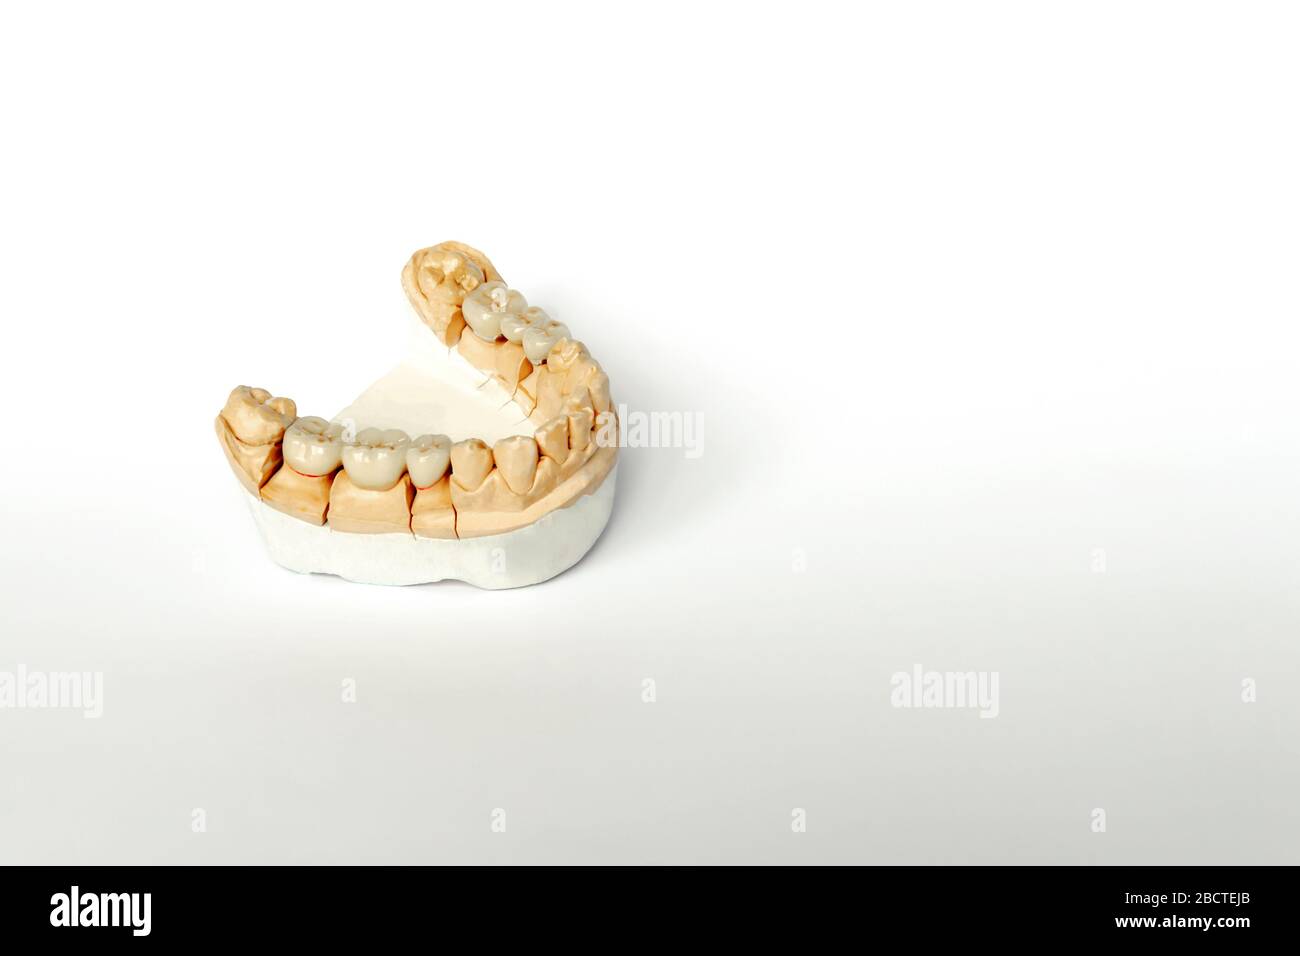 Orthopädische Zahnheilkunde. Zahnersatz Konzept. Zahnprothetik. Cermet Zähne. Keramik Brücken. Gips Modell des Kiefers und Zähne. Weißer Hintergrund Stockfoto